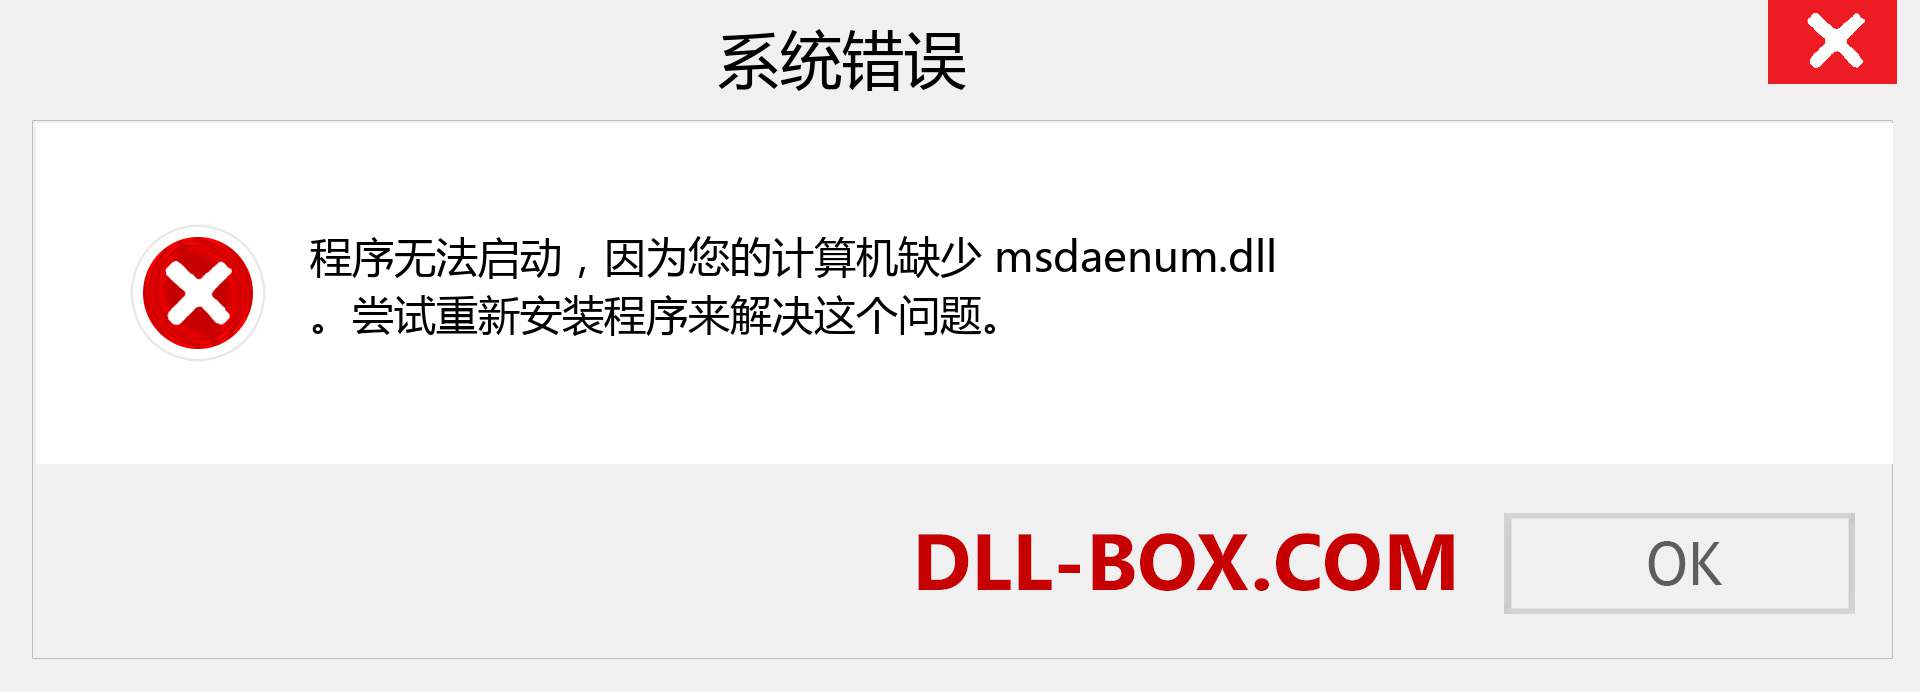 msdaenum.dll 文件丢失？。 适用于 Windows 7、8、10 的下载 - 修复 Windows、照片、图像上的 msdaenum dll 丢失错误